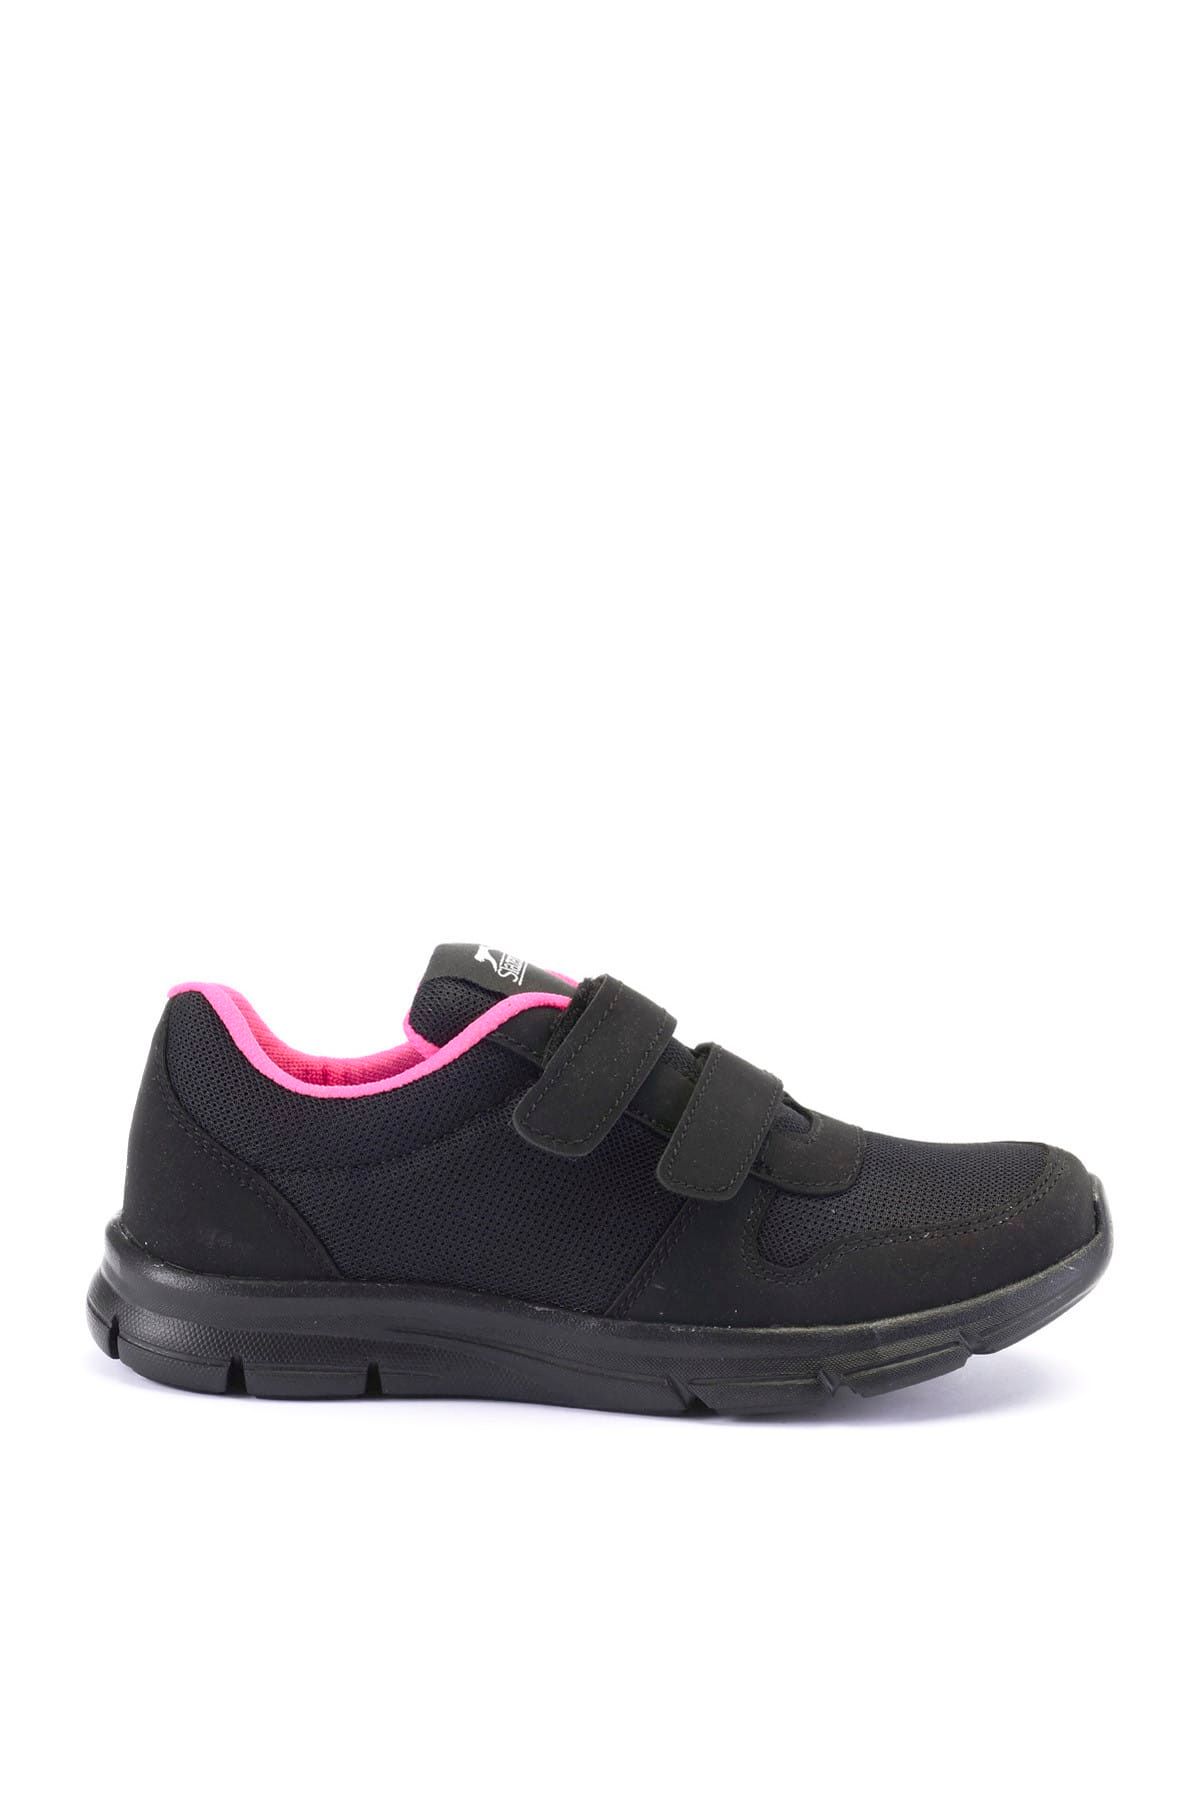 Slazenger Hılary Sneaker Kadın Ayakkabı Siyah